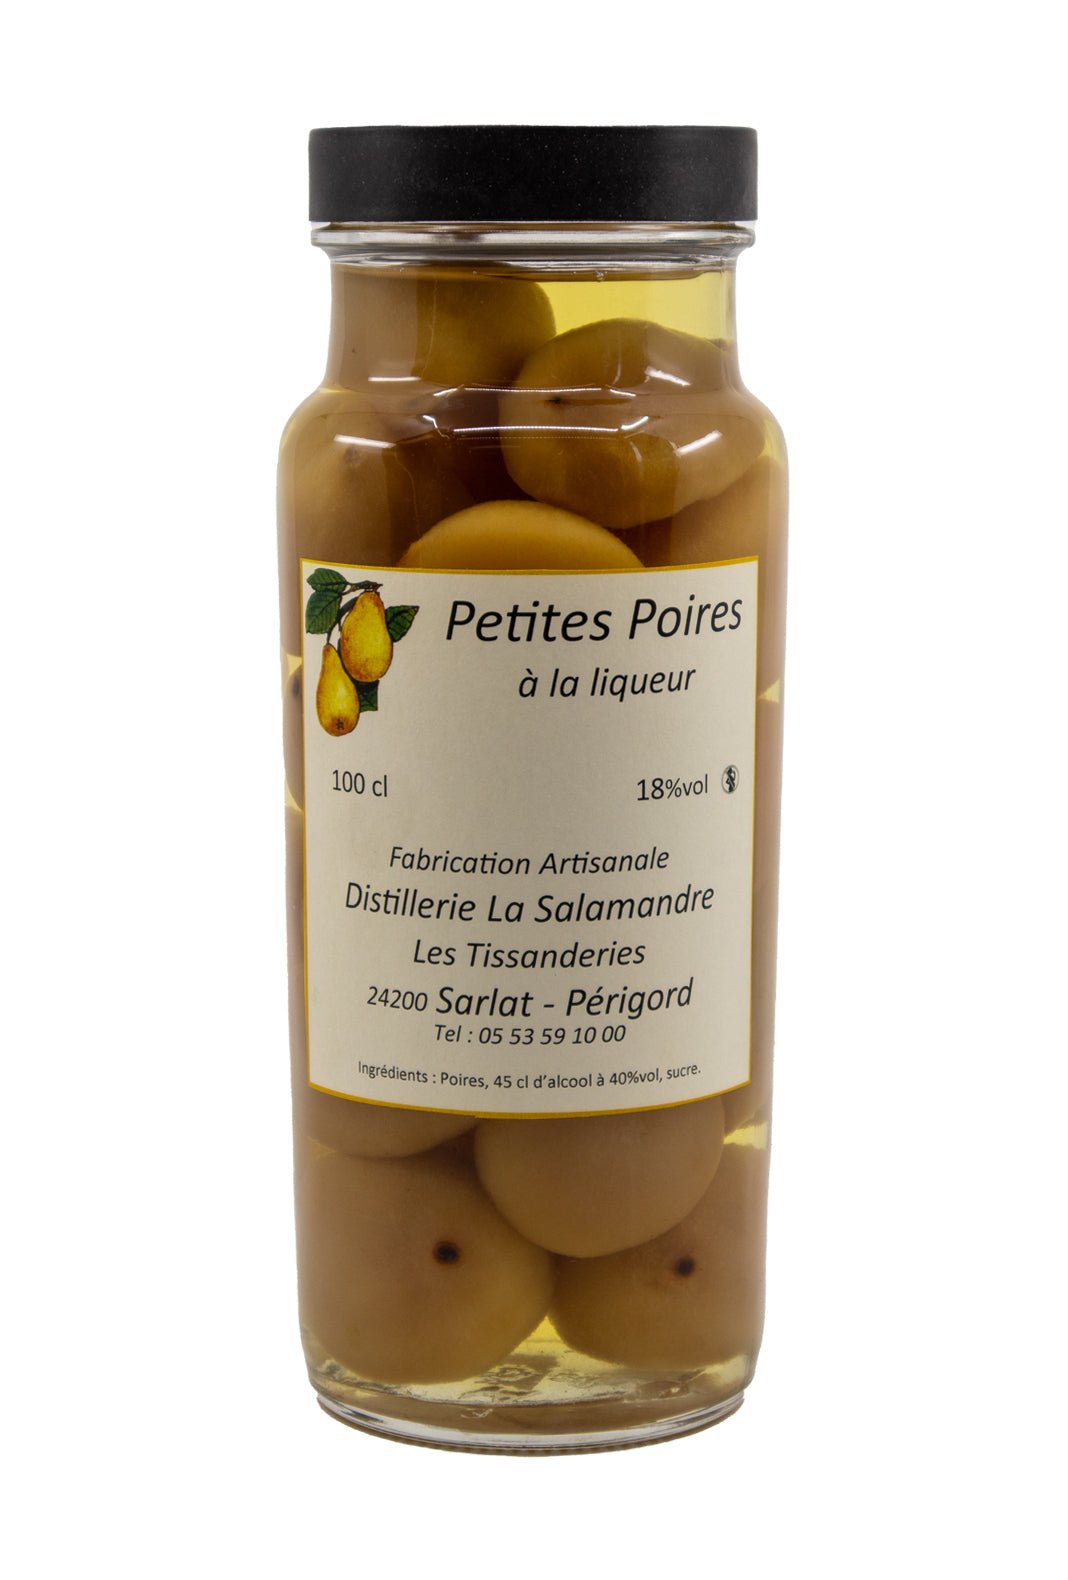 Salamandre Petites Poires a la Liqueur (Tiny Pears in Liqueur) 18% 1000ml | Liquor & Spirits | Shop online at Spirits of France